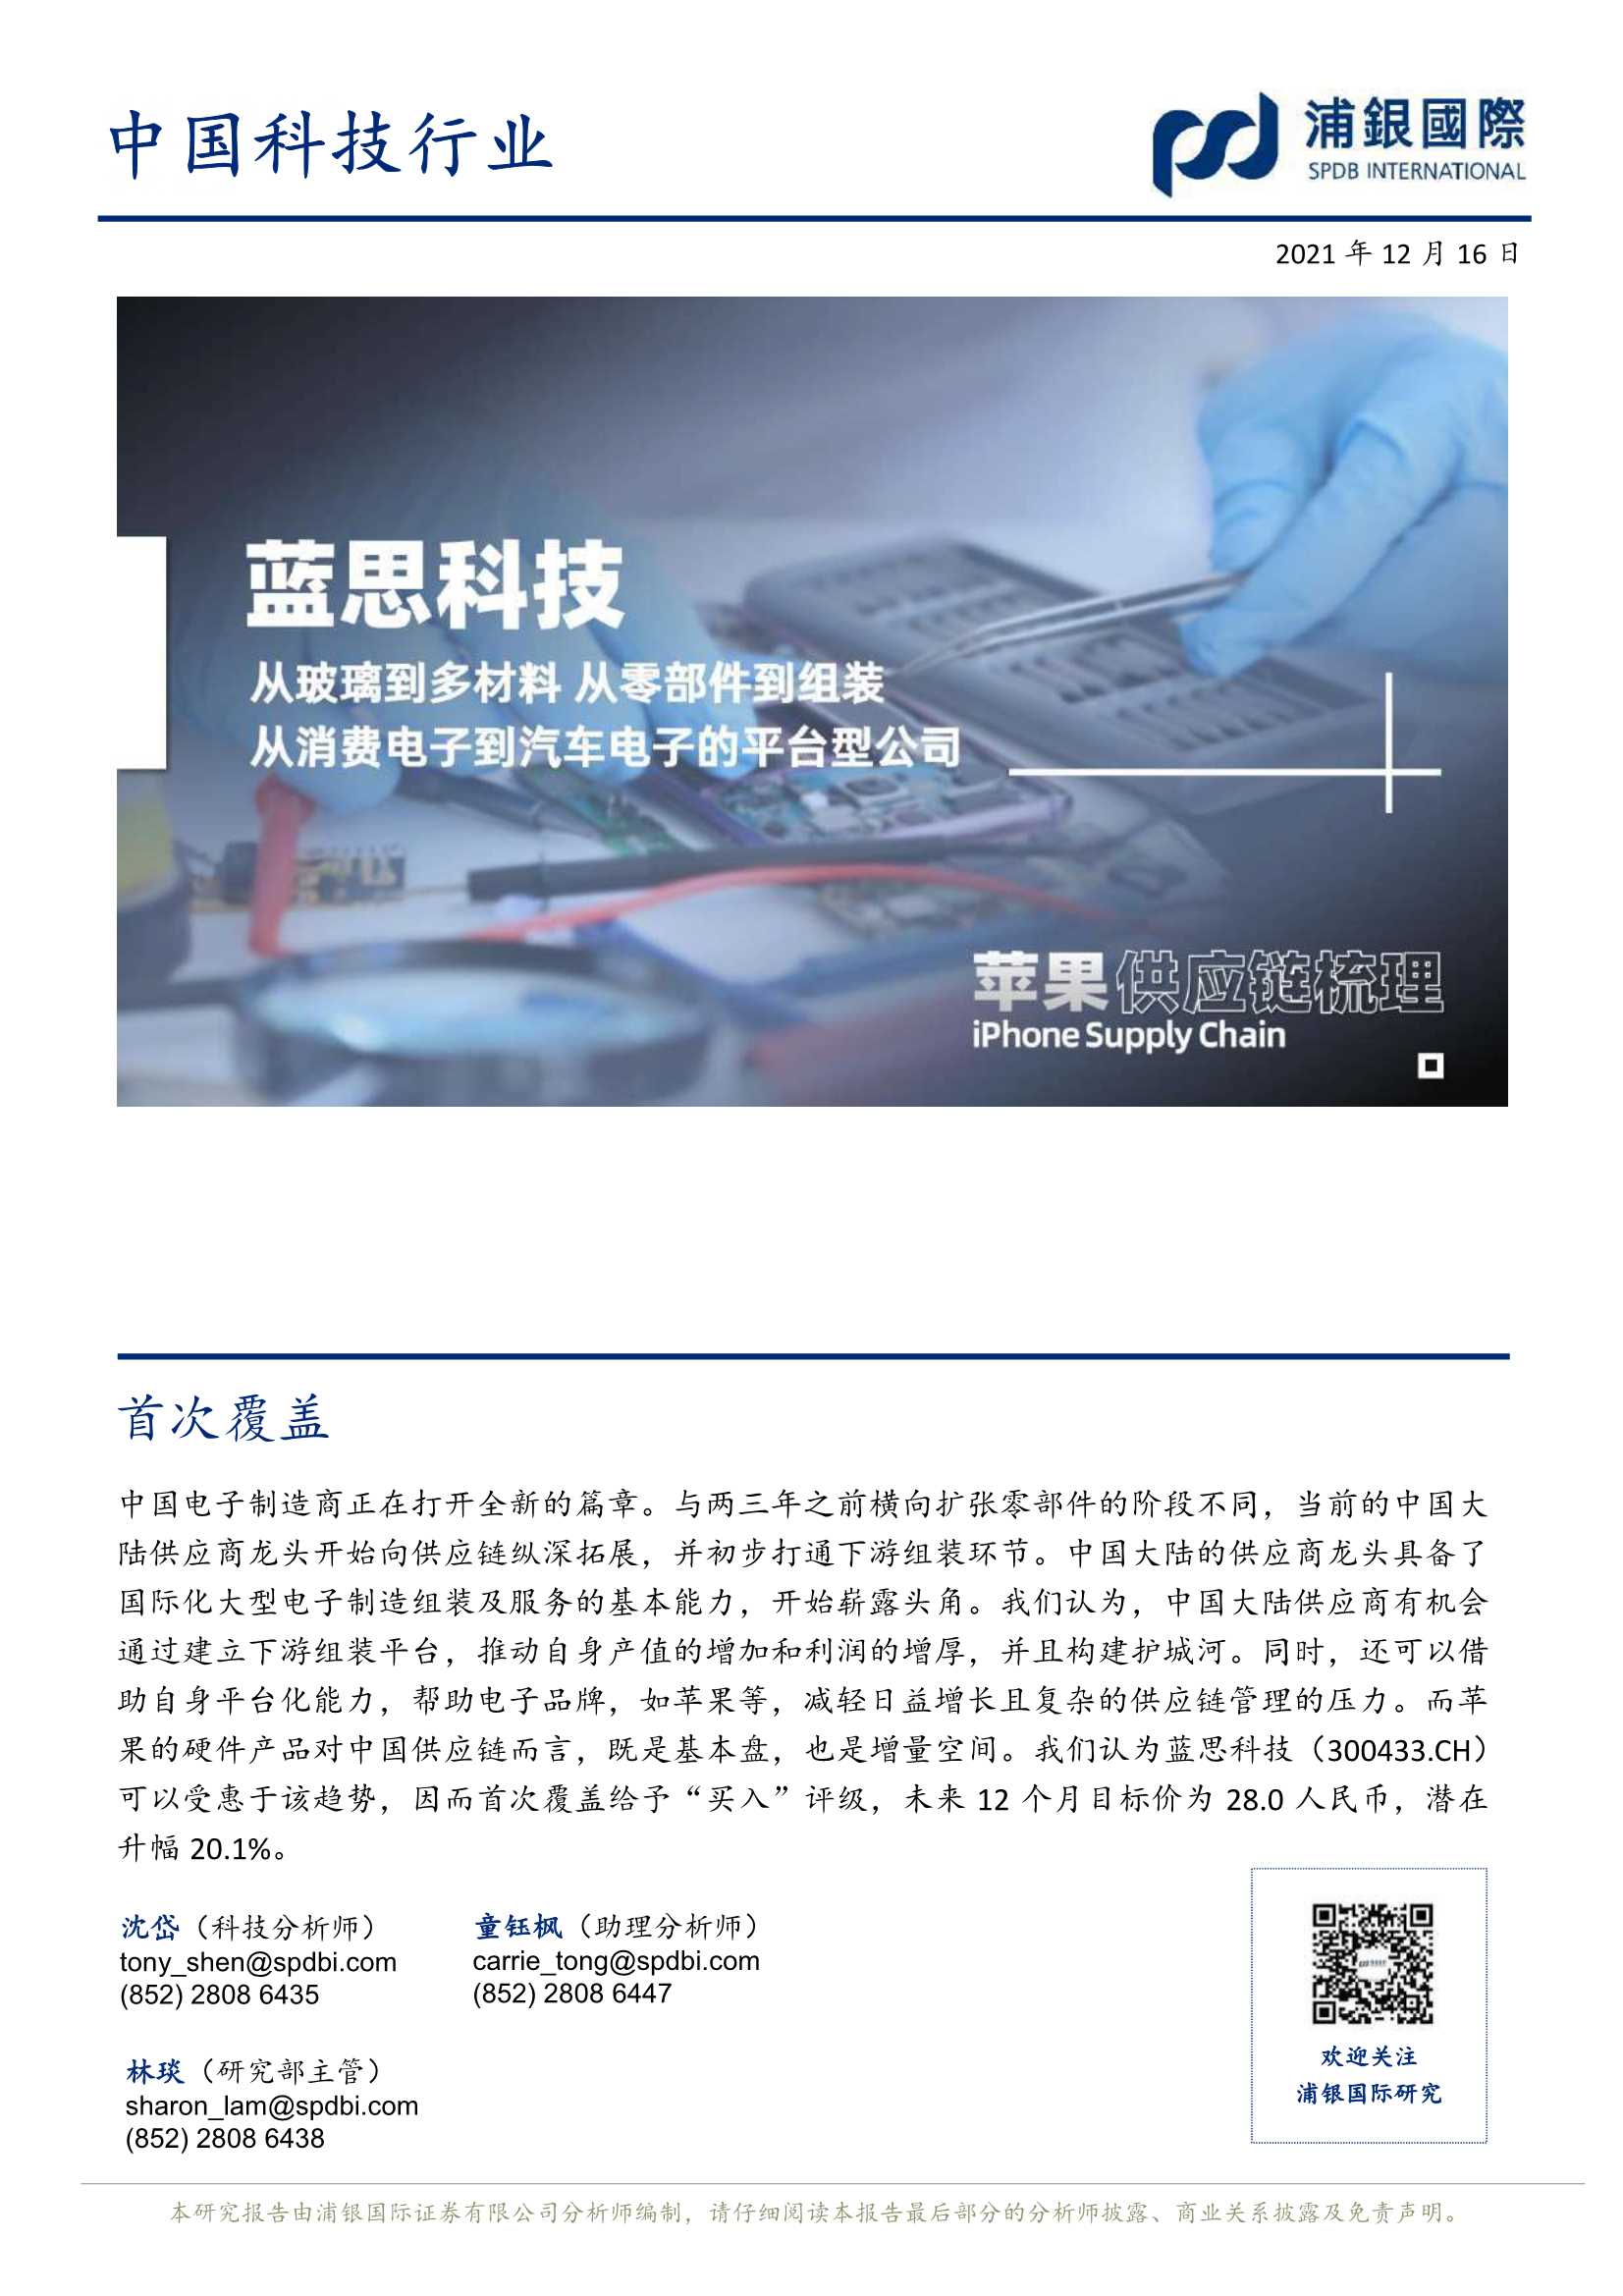 浦银国际-蓝思科技-300433-首次覆盖：从玻璃到多材料、从零部件到组装、从消费电子到汽车电子的平台型公司-20211216-29页